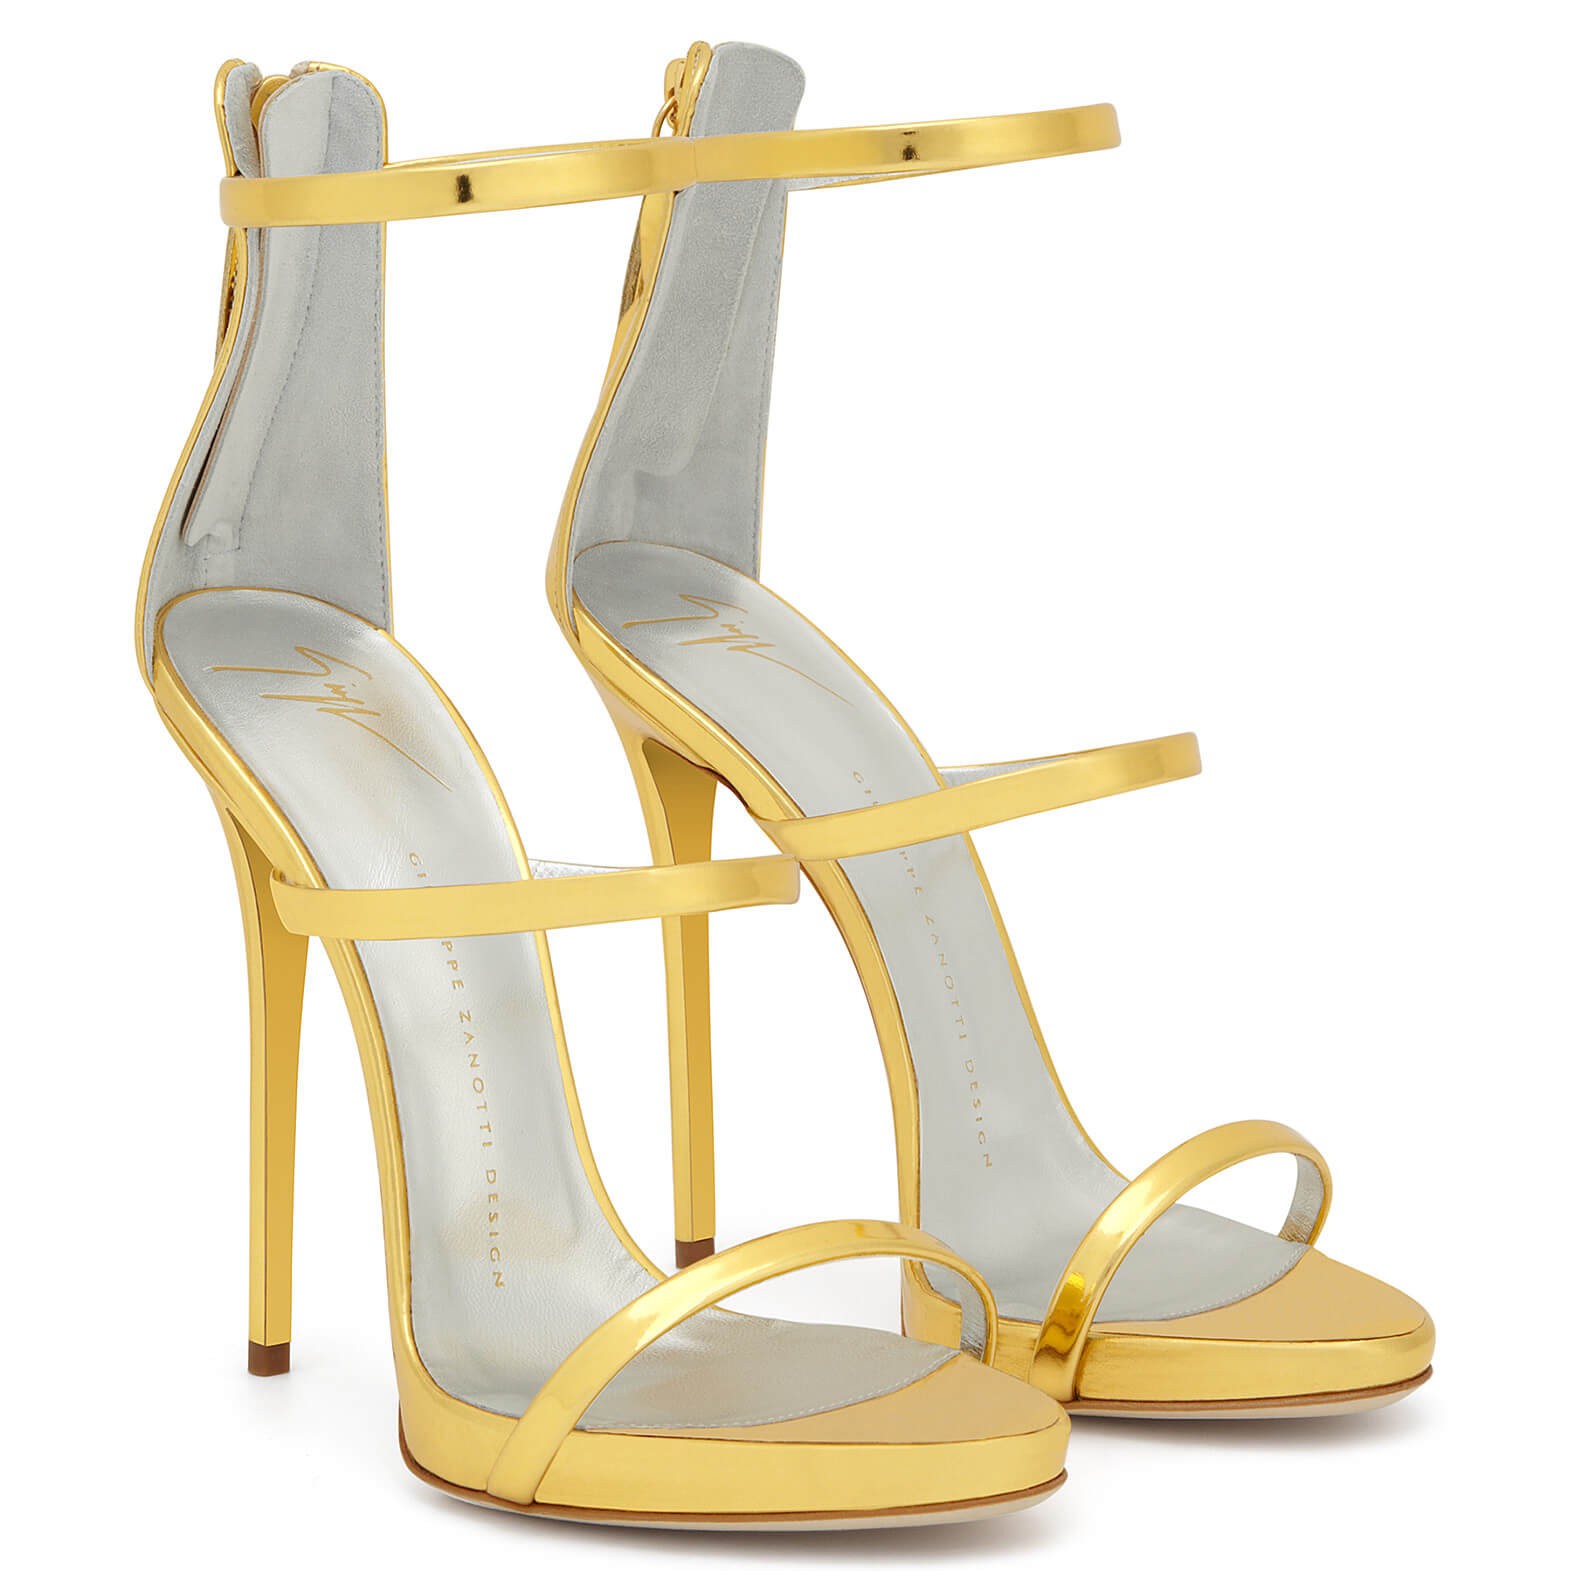 Đôi sandal tôn chân nuột nà của Bích Phương bỗng thành “hot item” được các shop online thi nhau đăng bán - Ảnh 6.